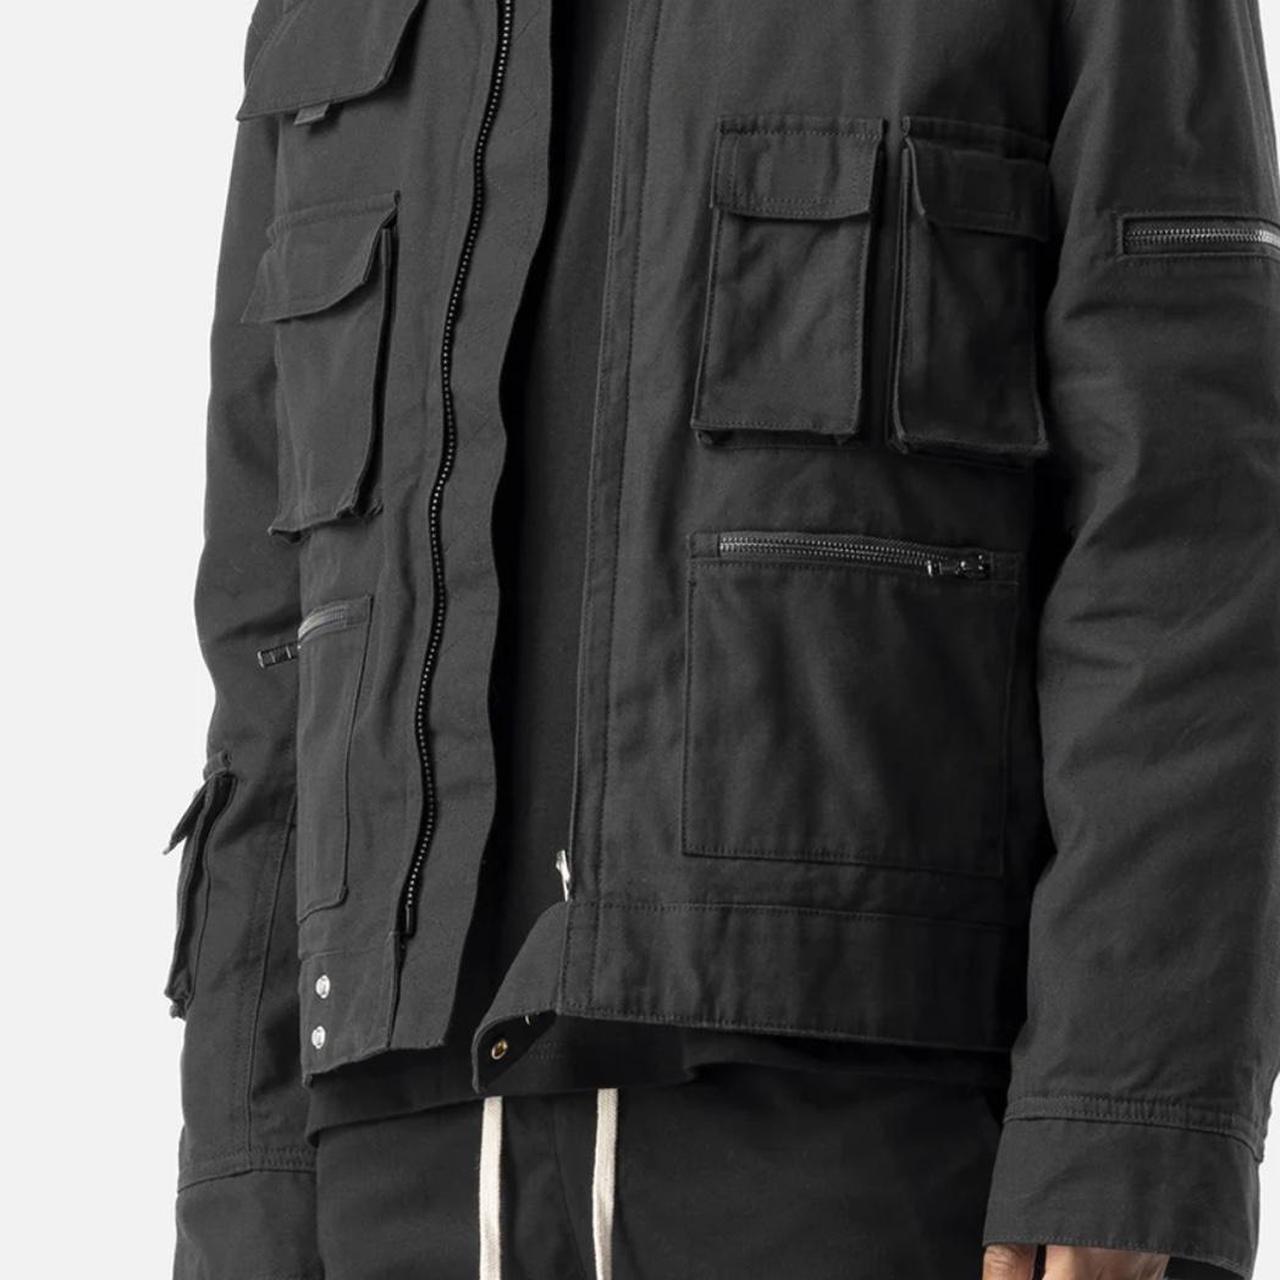 Blacktailor Cropped Cargo Jacket Oversized Fit Brand... - Depop